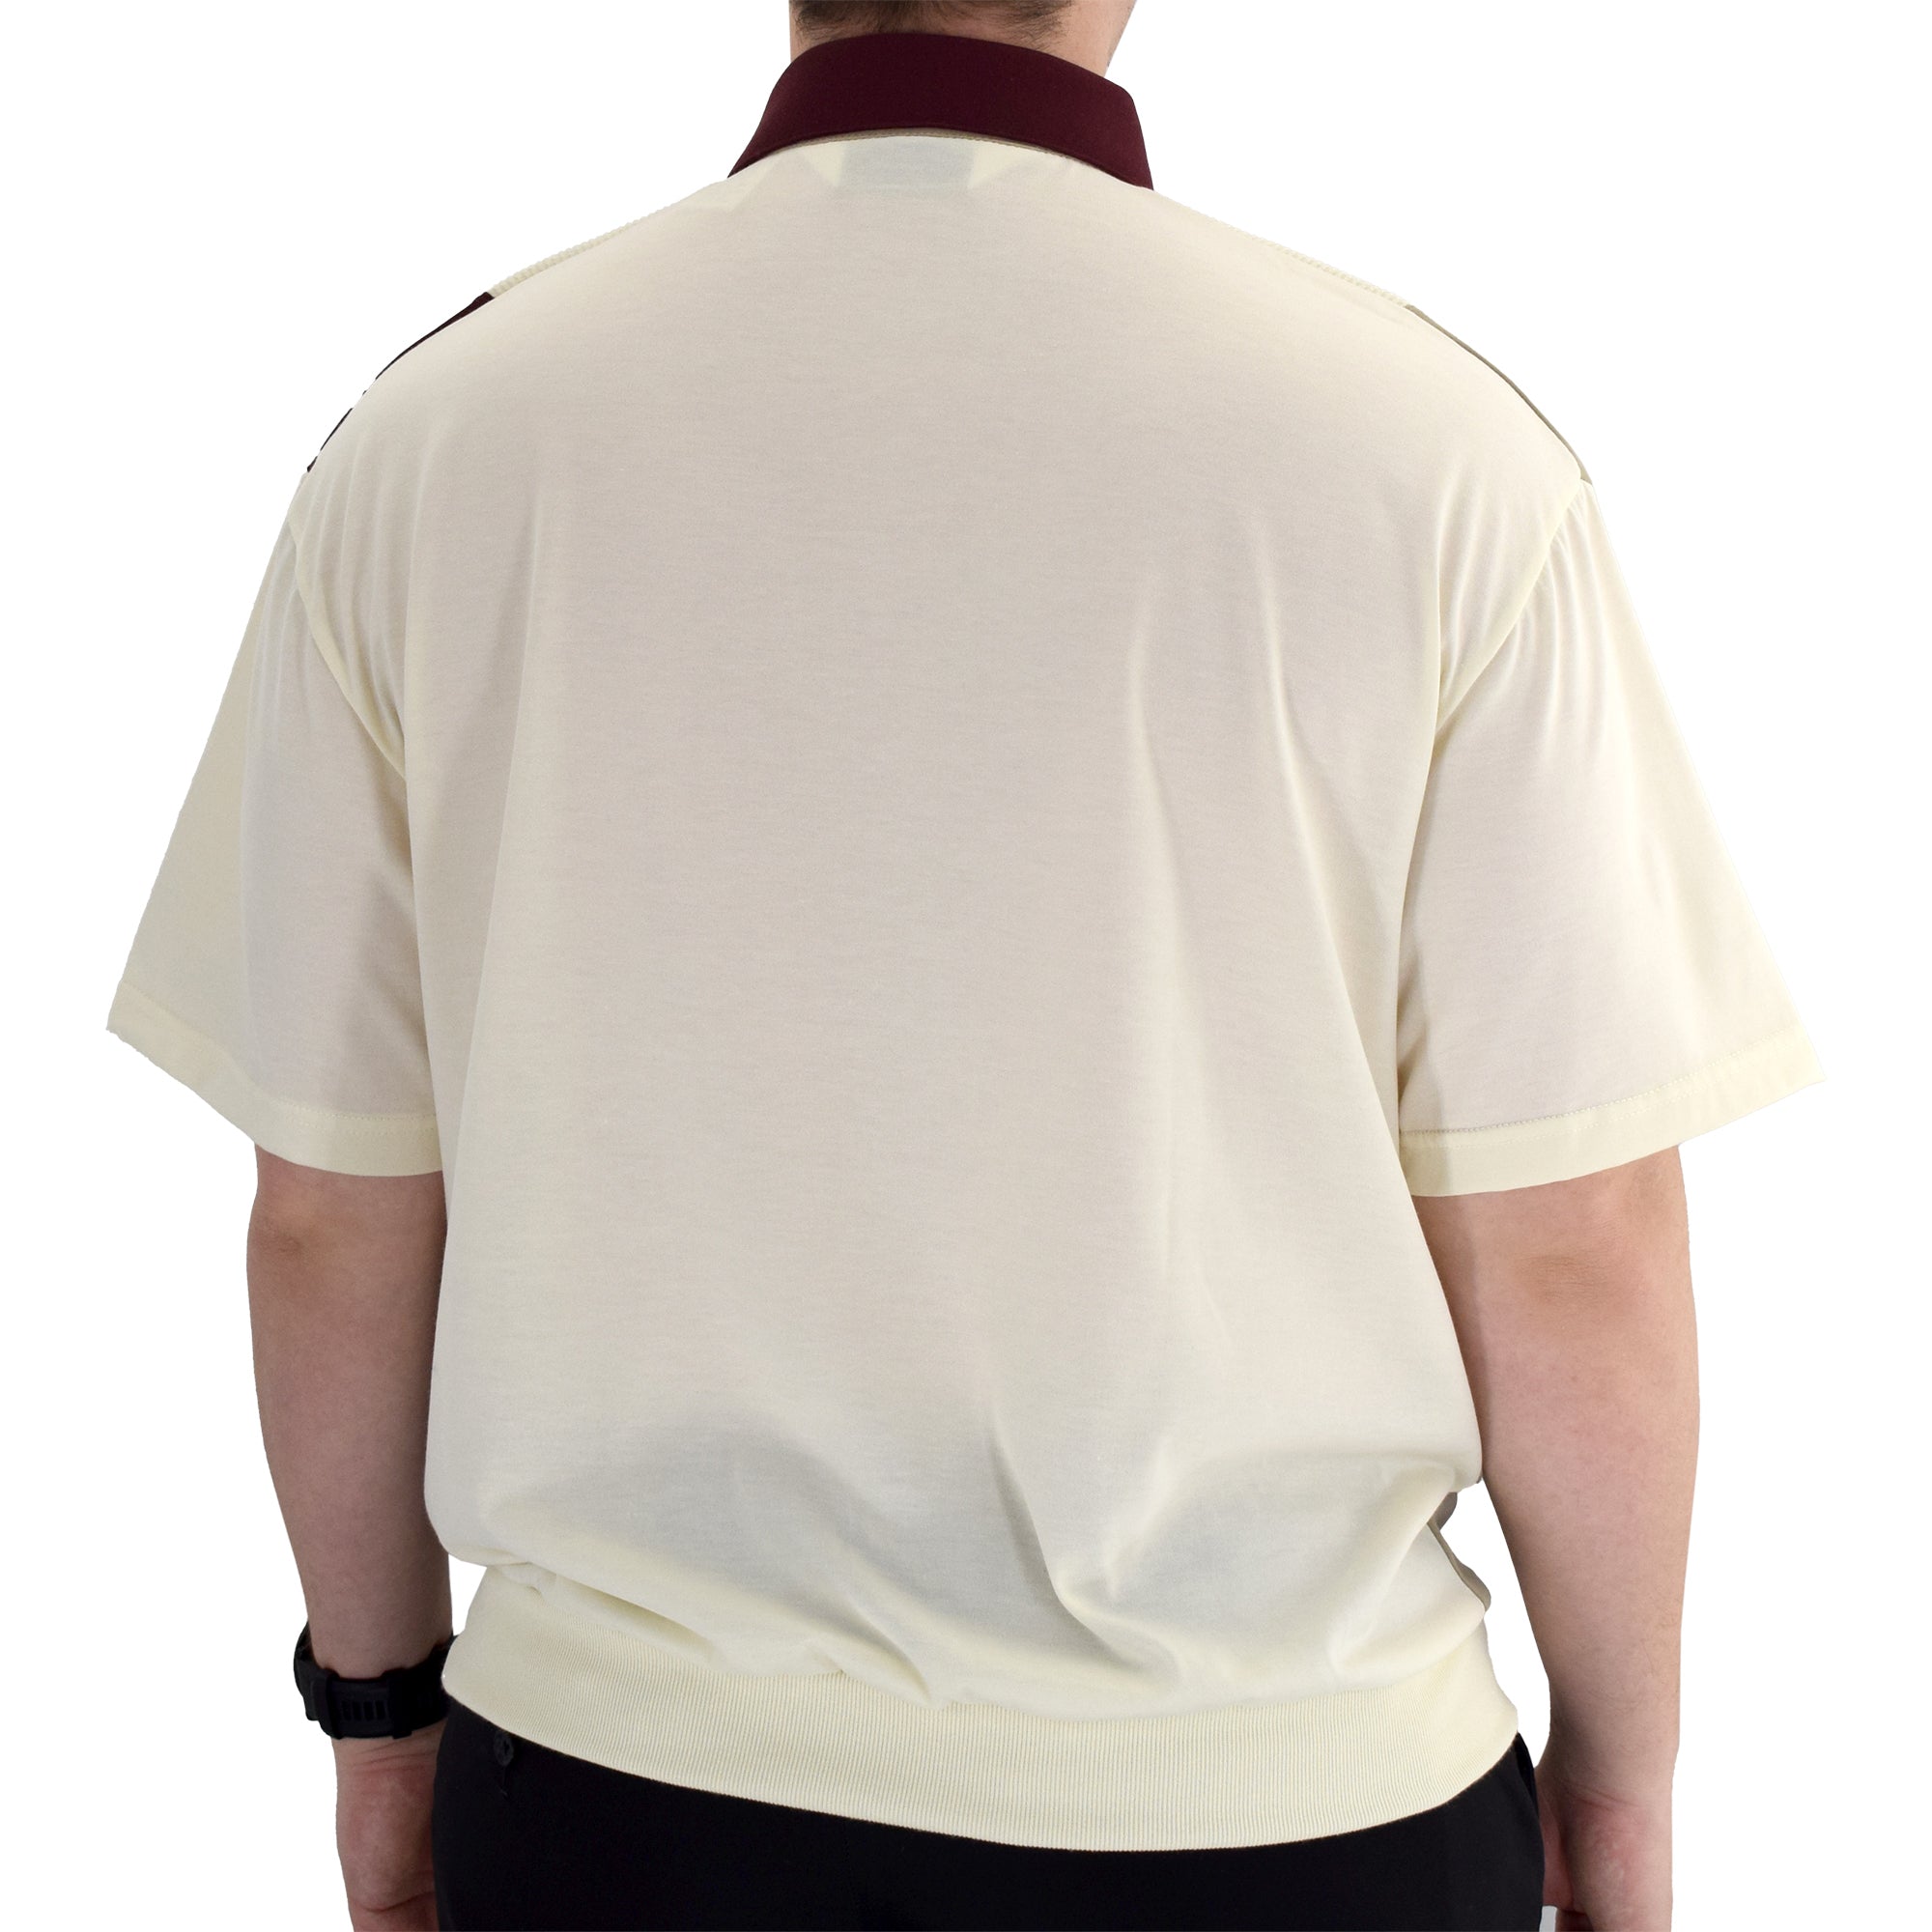 Classics By Palmland Knit Banded Bottom Shirt - 6010-121 Burgundy - bandedbottom